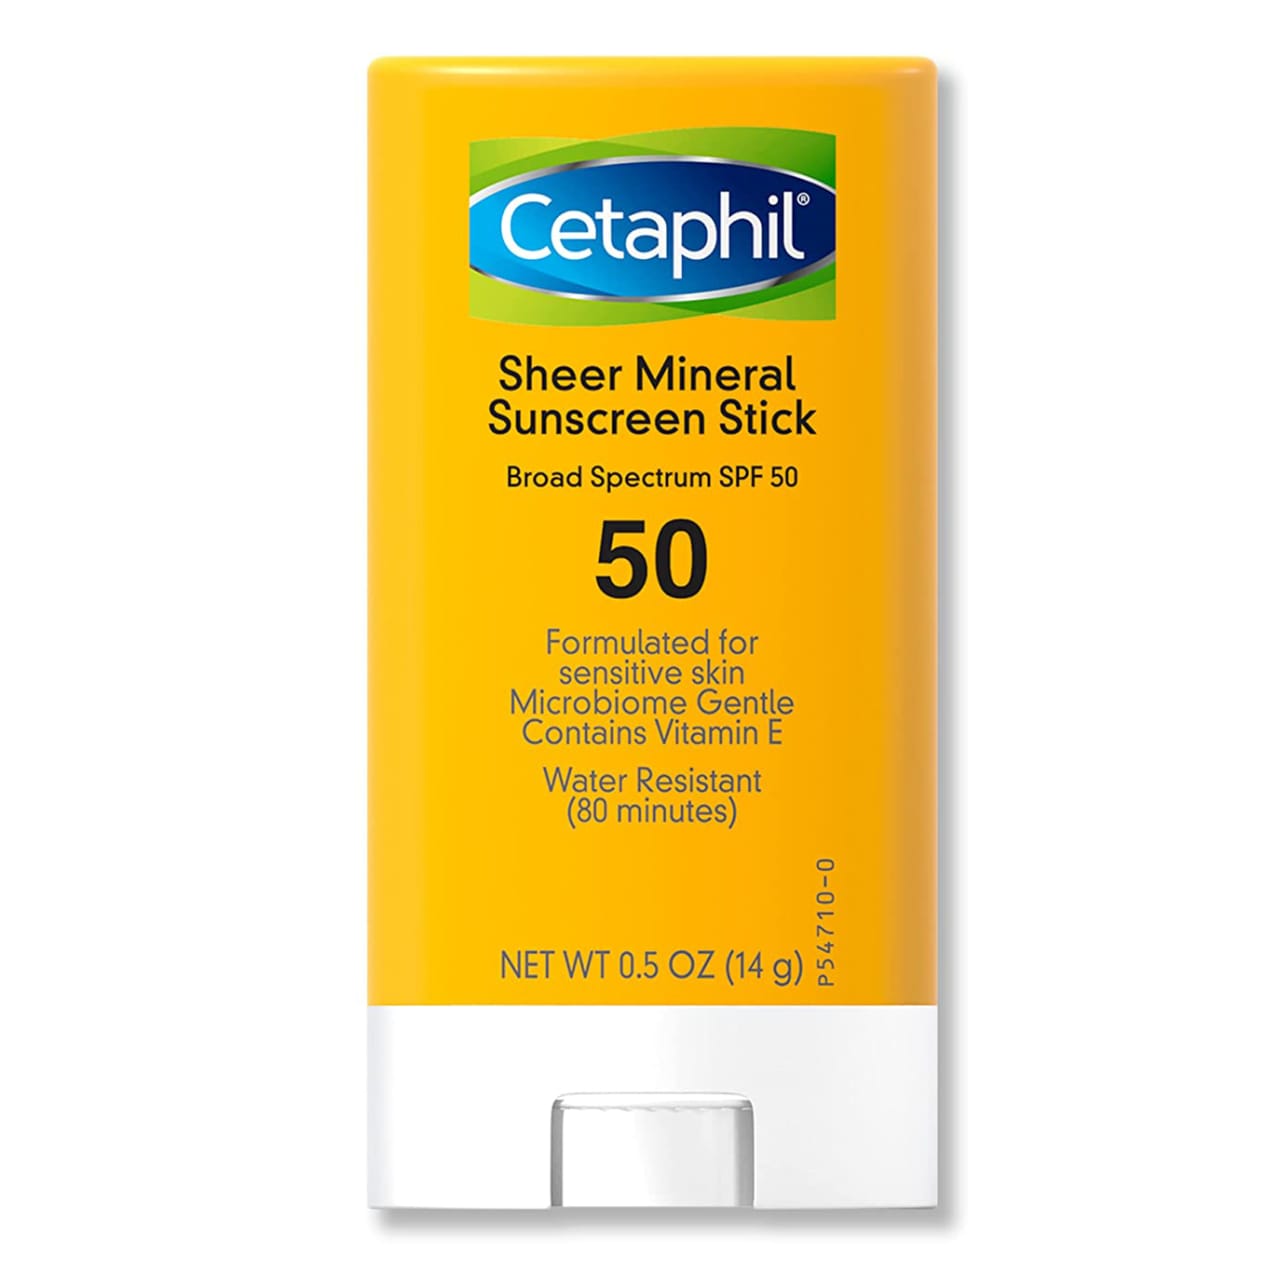 Sheer Mineral Sunscreen Stick SPF 50